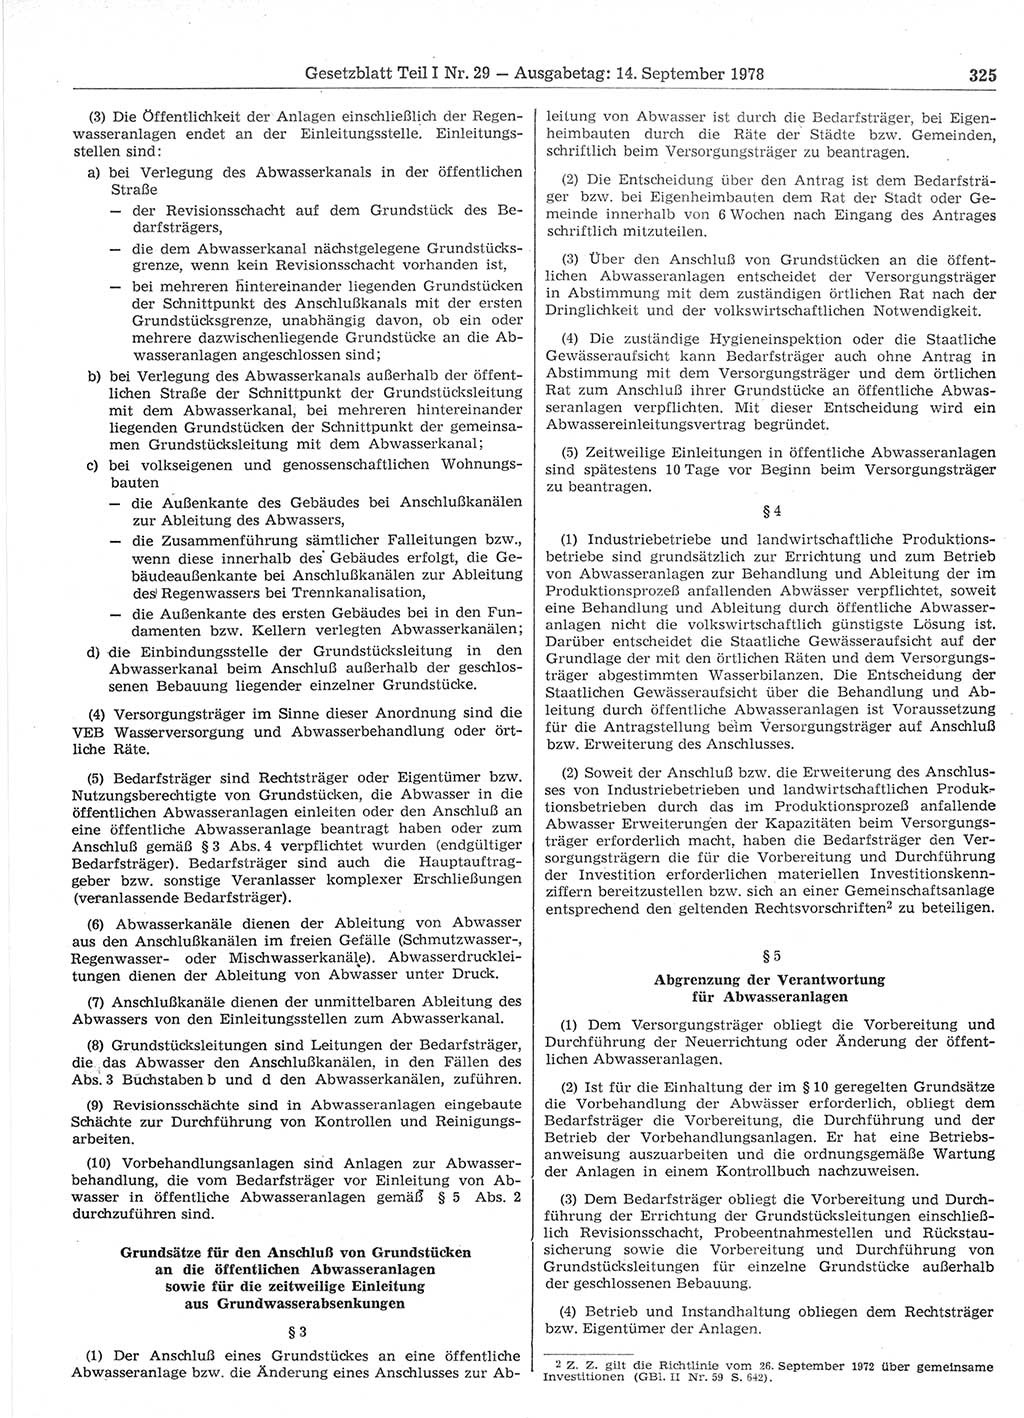 Gesetzblatt (GBl.) der Deutschen Demokratischen Republik (DDR) Teil Ⅰ 1978, Seite 325 (GBl. DDR Ⅰ 1978, S. 325)